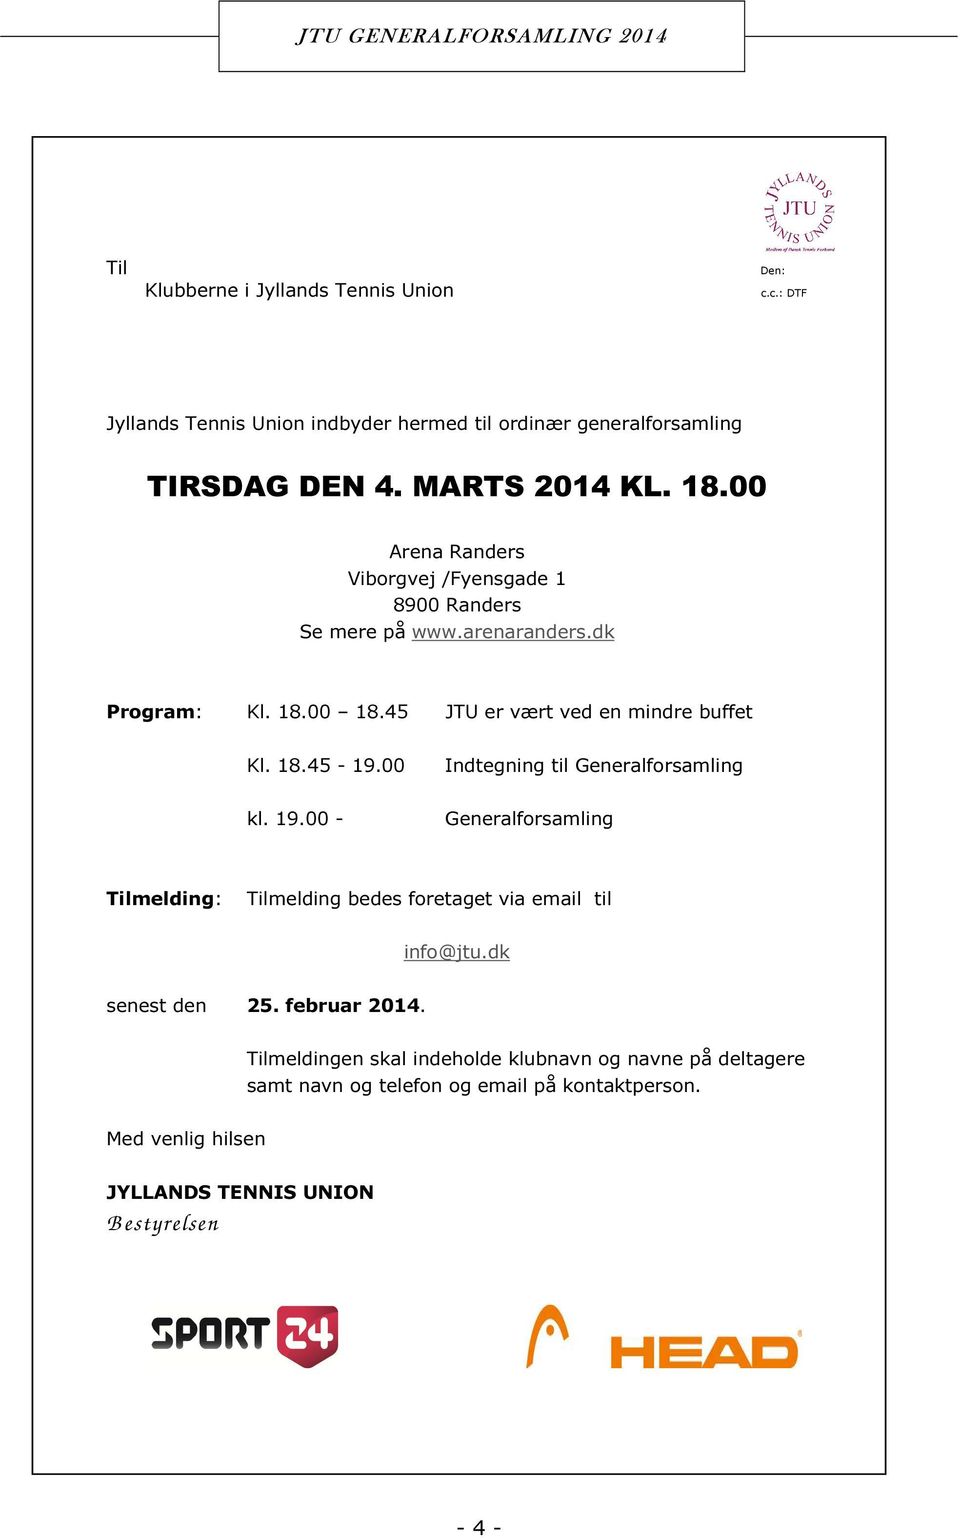 00 Indtegning til Generalforsamling kl. 19.00 - Generalforsamling Tilmelding: Tilmelding bedes foretaget via email til info@jtu.dk senest den 25. februar 2014.